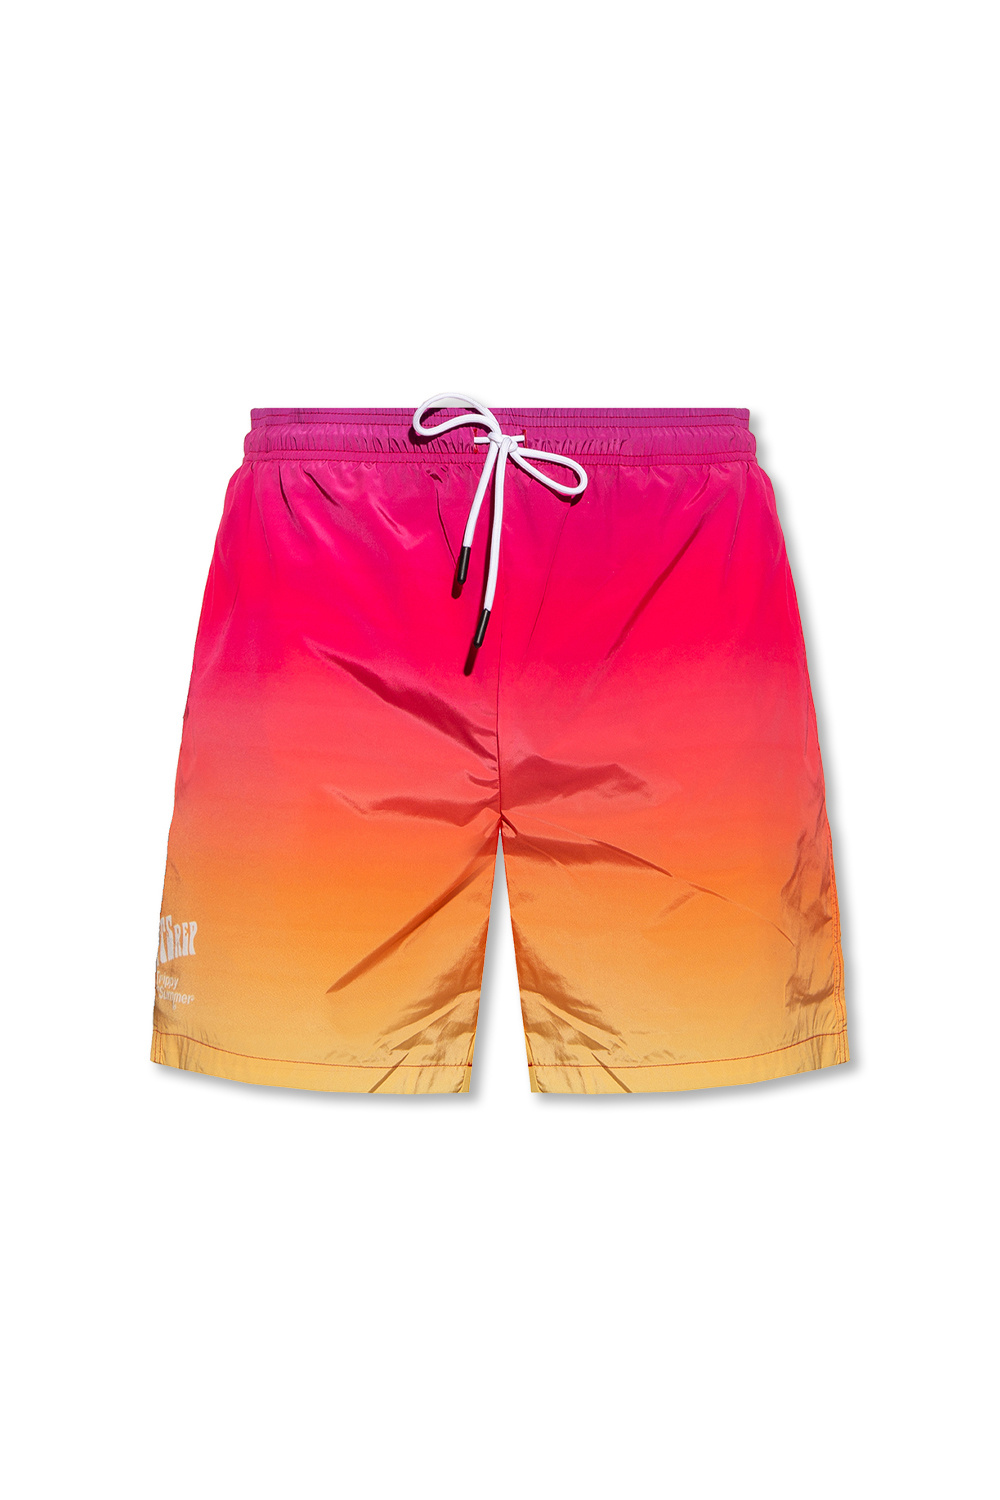 Louis Vuitton Bandana Board Swim Shorts, Orange, L